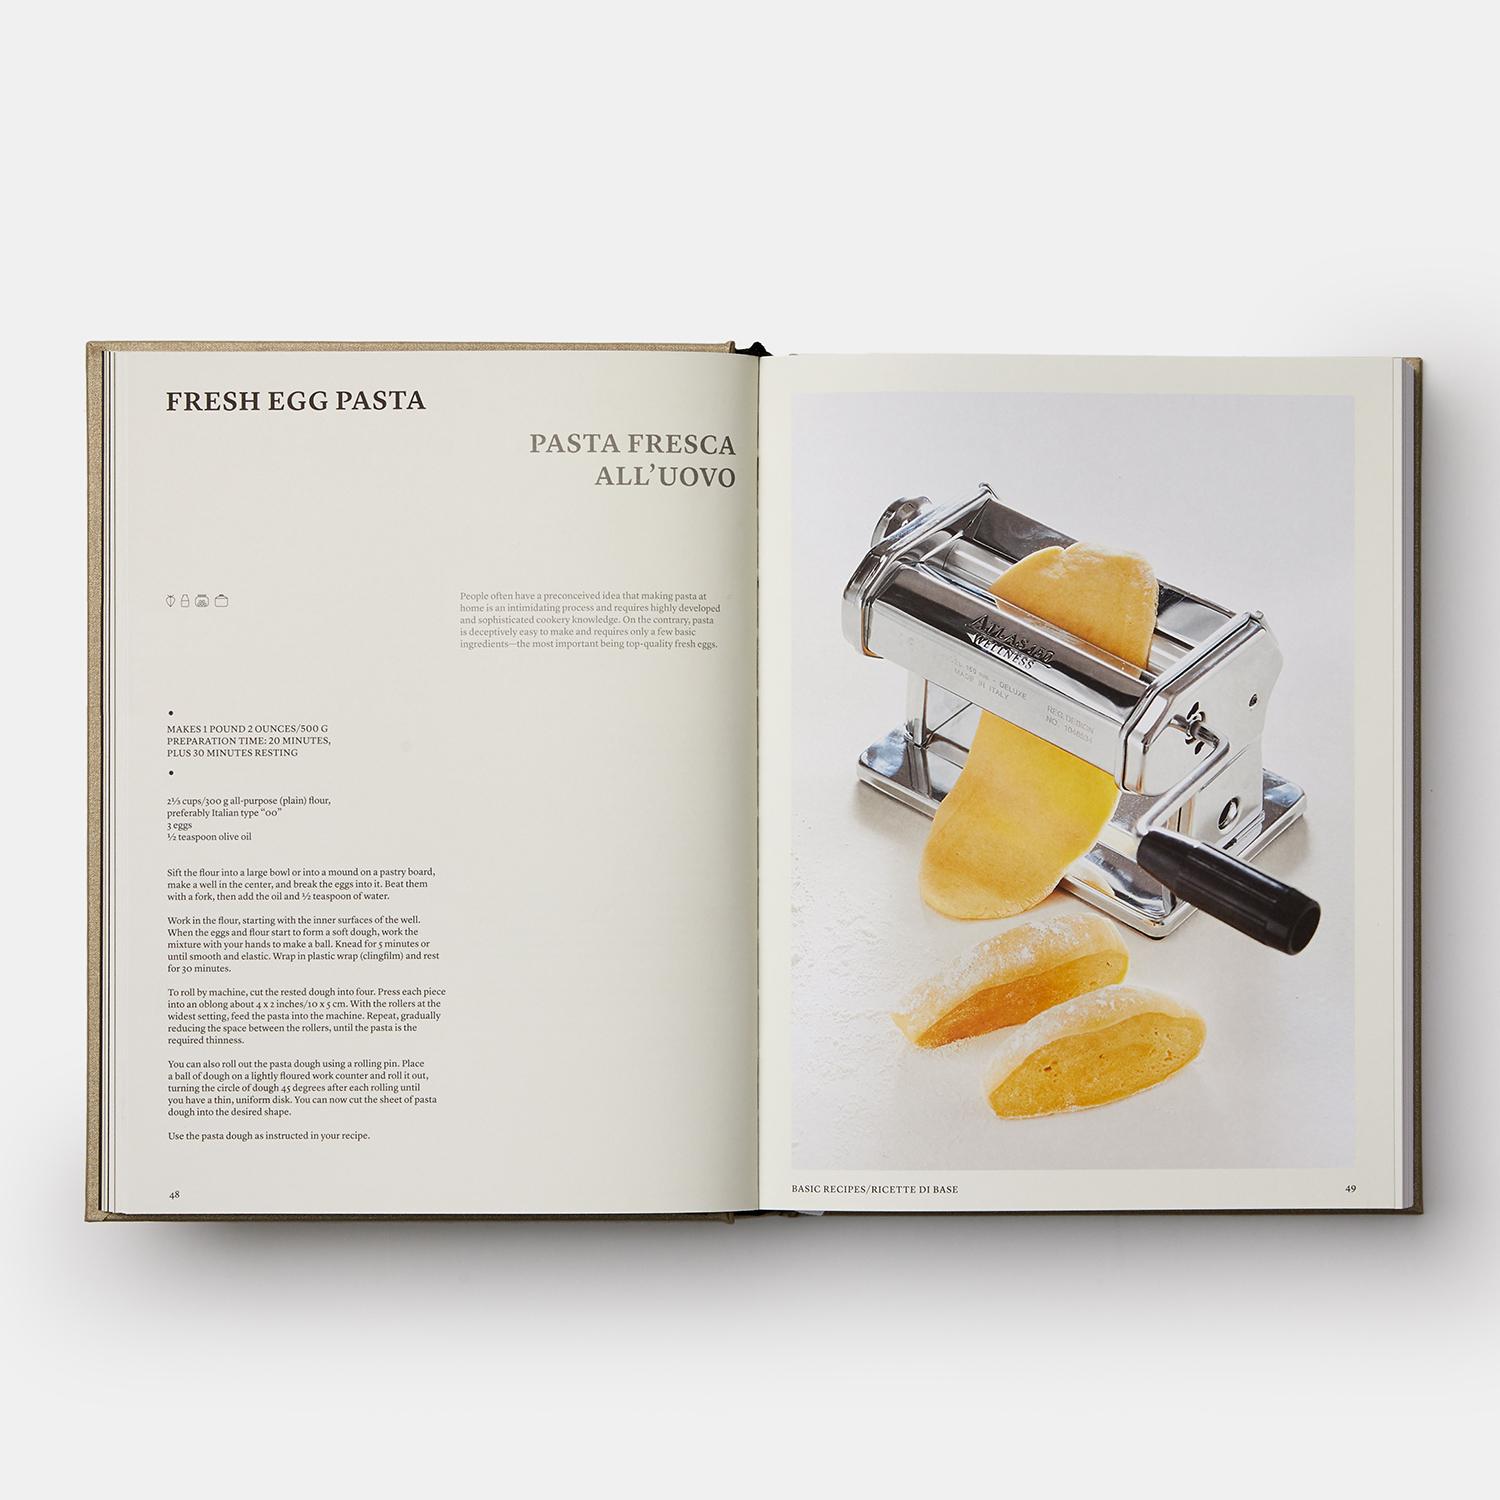 Eine luxuriöse Sammlung der besten Rezepte aus dem weltweit führenden italienischen Kochbuch - mit völlig neuen Fotos und neuem Design

Das 1950 erstmals veröffentlichte Buch Il Cucchiaio d'Argento oder sein englischsprachiger Ableger The Silver